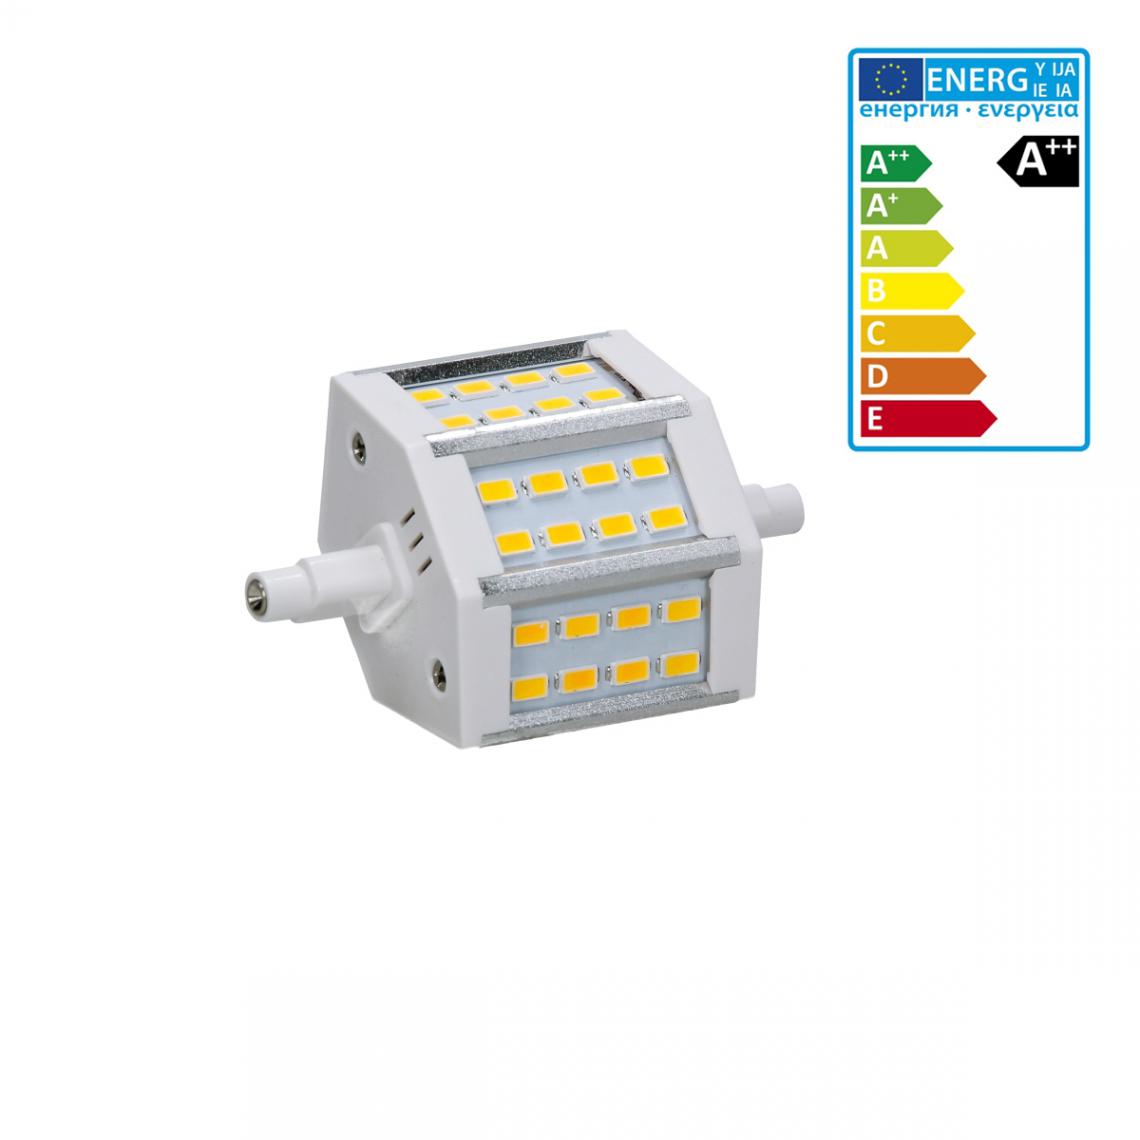 Ecd Germany - ECD Germany R7S Lampe LED 5W 78mm 360 lumens SMD 360 5730 AC 220-240 angle de faisceau 180 ° remplace 35W ampoule halogène réglable blanc chaud - Tubes et néons